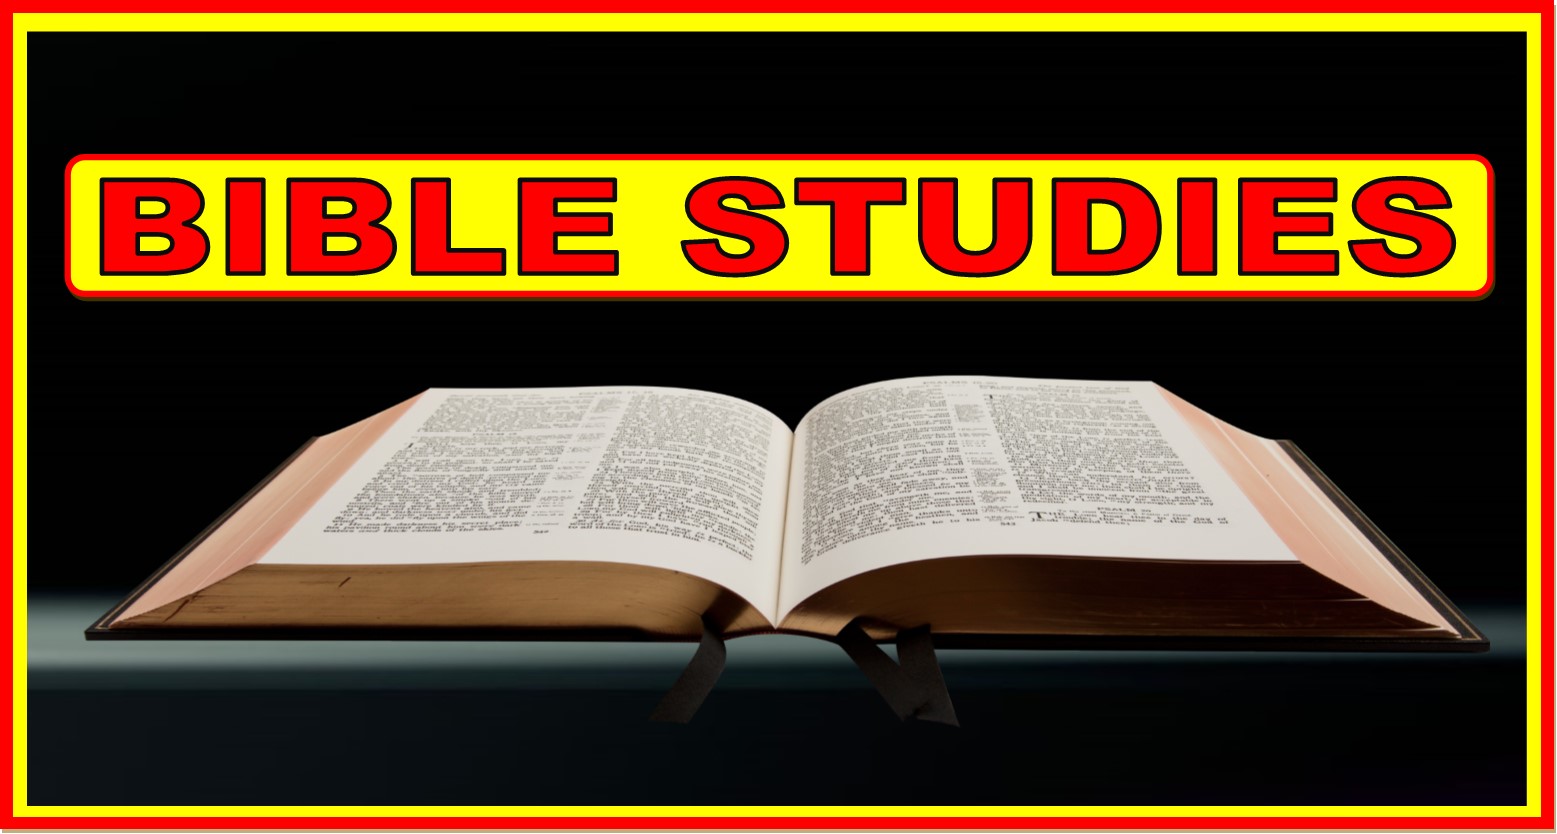 BIBLE STUDIES WEBSITE HEADER 1-6-2020